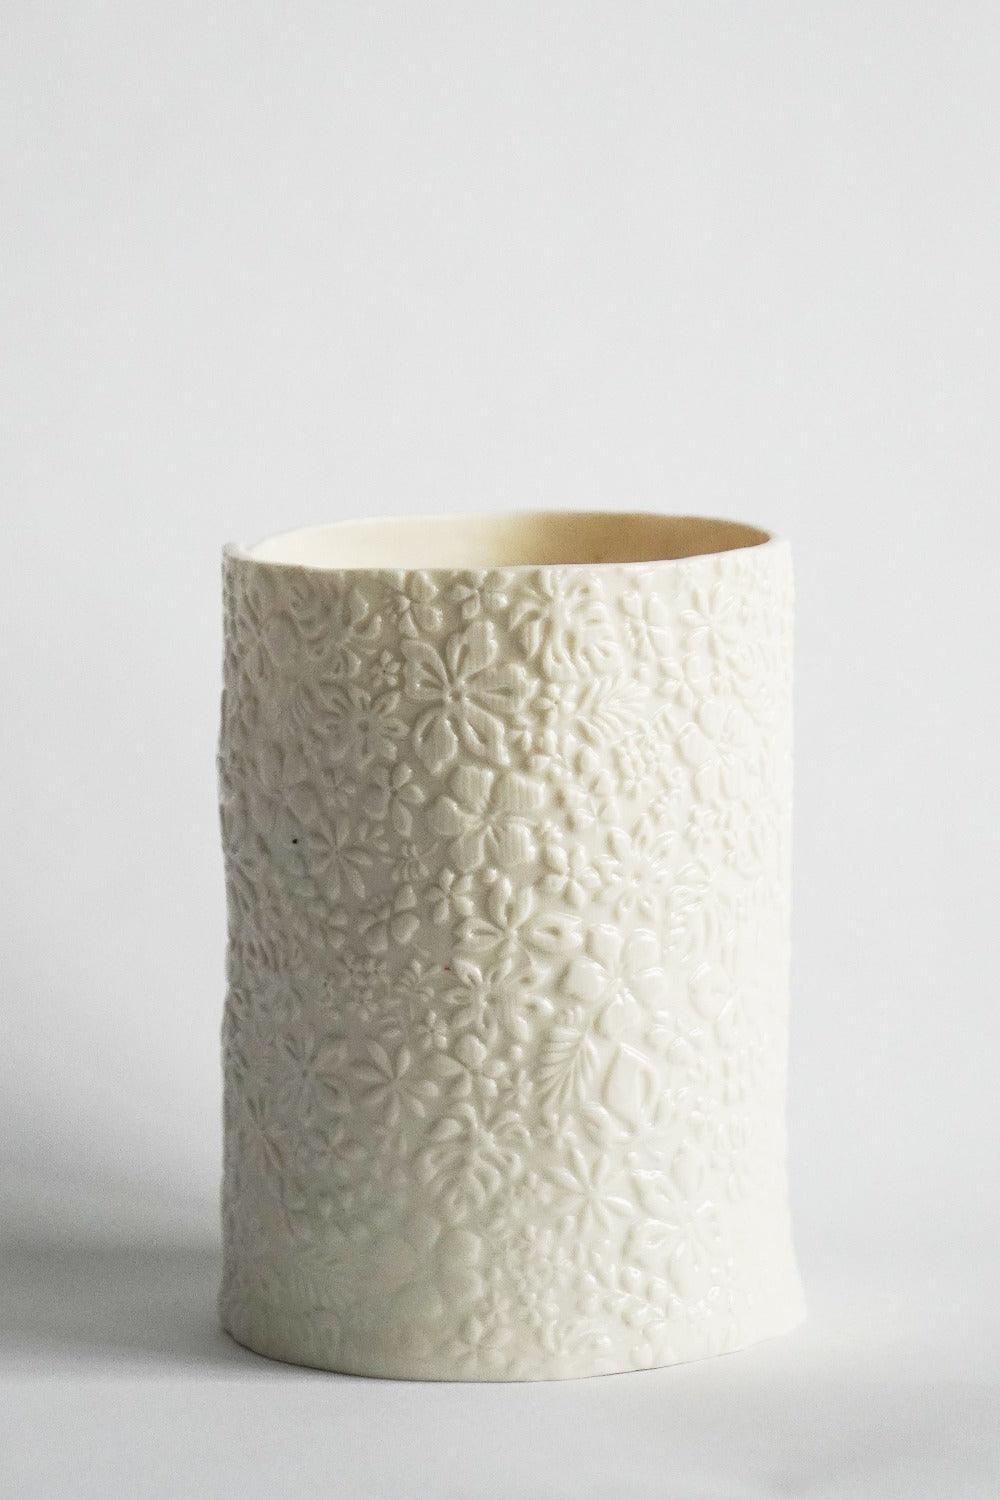 Textured Slab Vase - Coco & Wolf